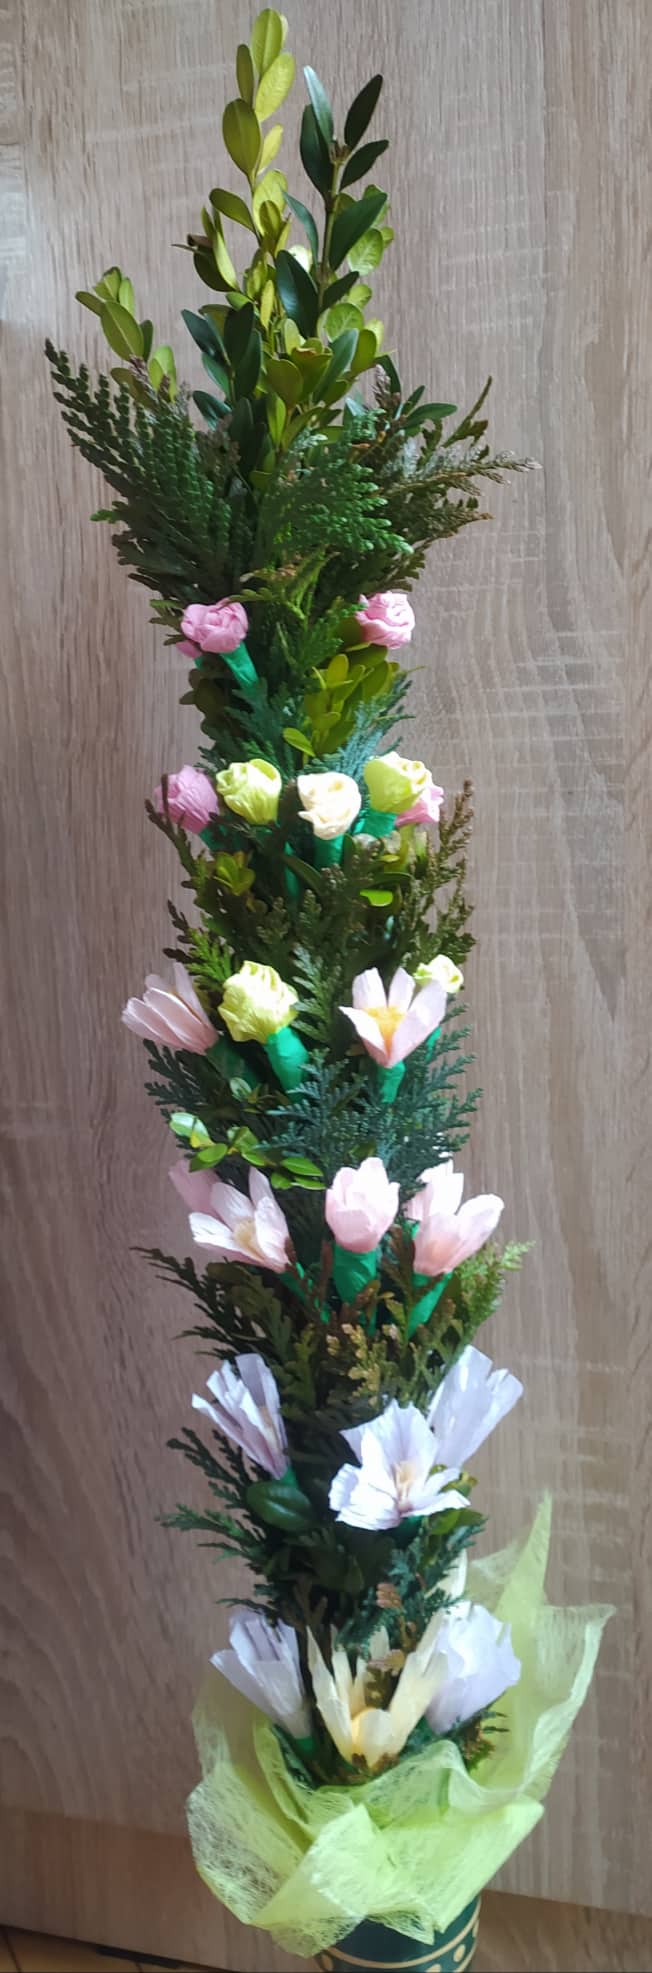 kompozycja z żywych gałązek bukszpanu, kwiaty z bibuły, pastelowa kolorystyka